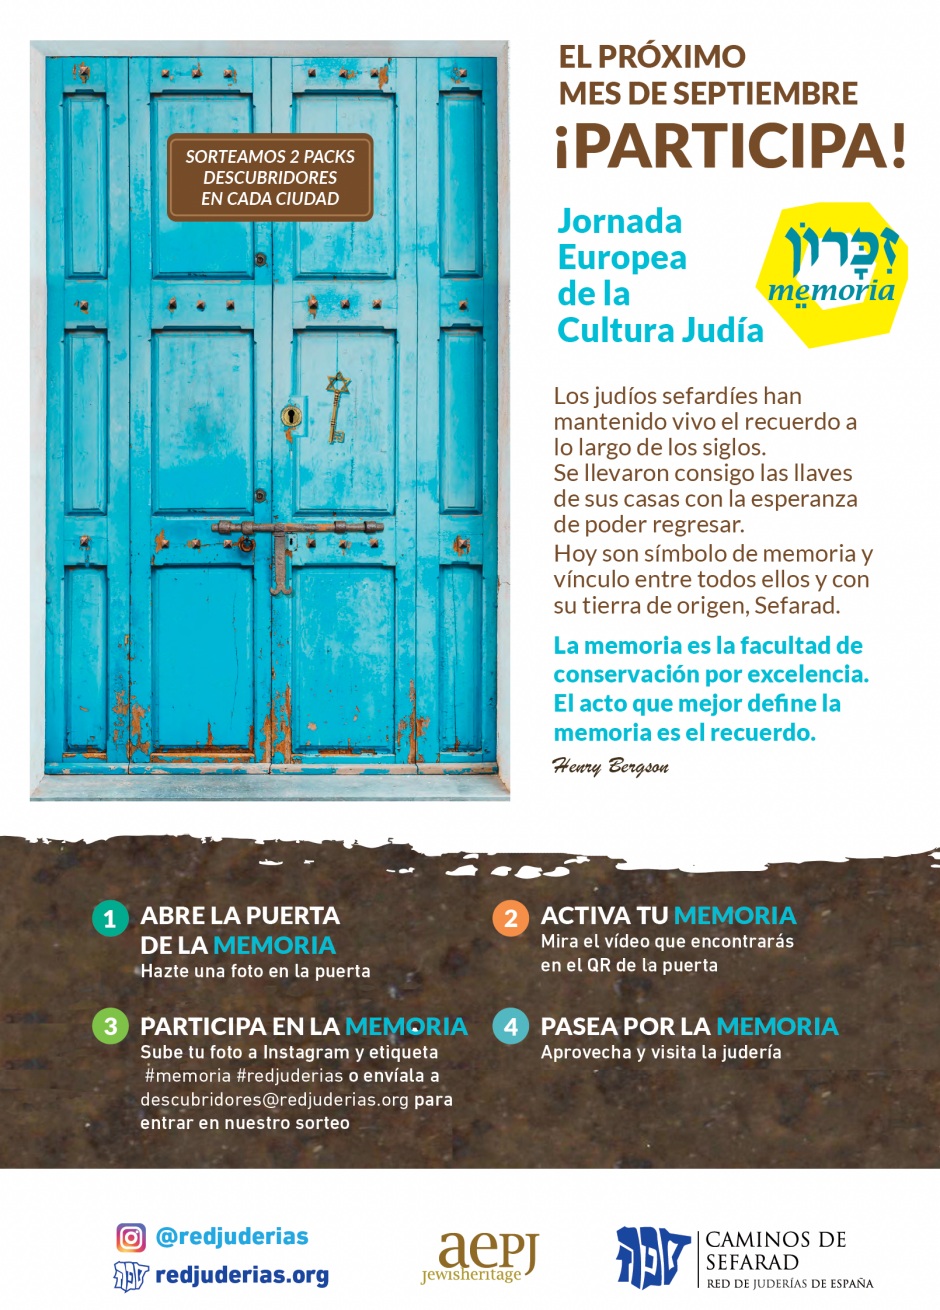 Las ciudades de la Red de Juderías se preparan para celebrar una nueva edición de las Jornadas Europeas de la Cultura Judía